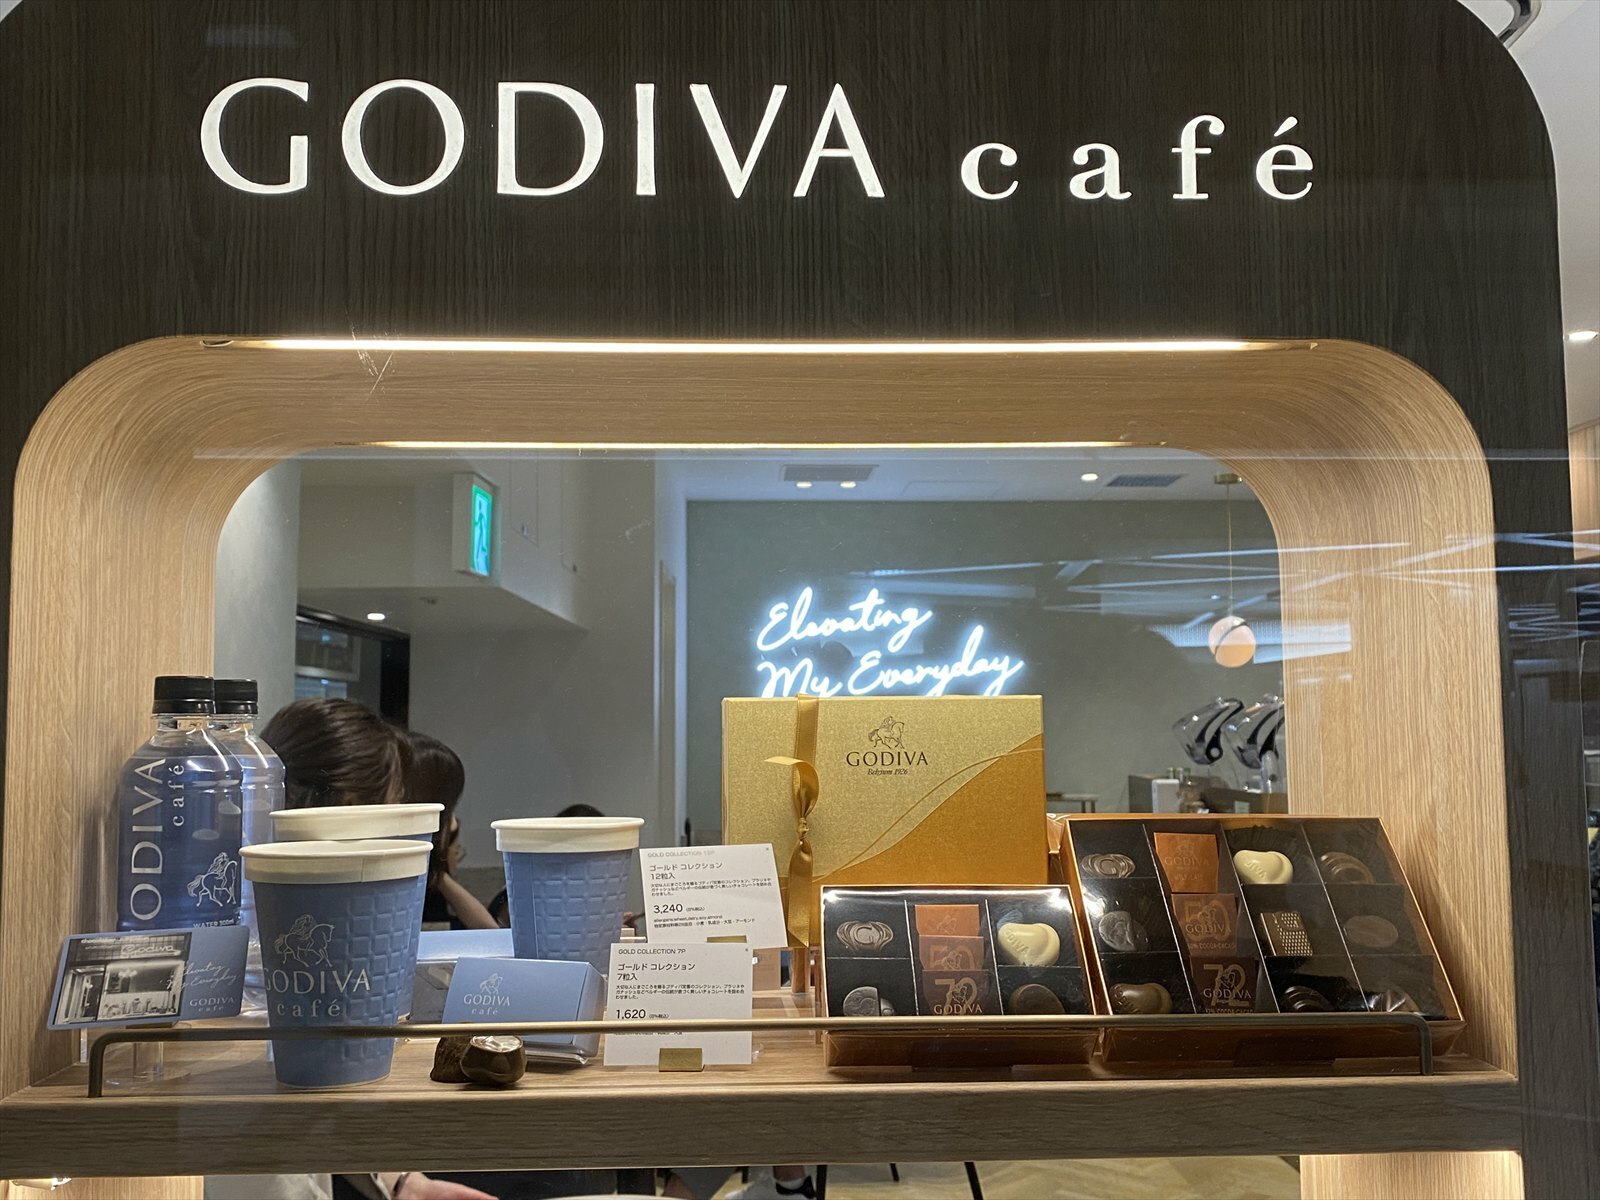 Godiva café